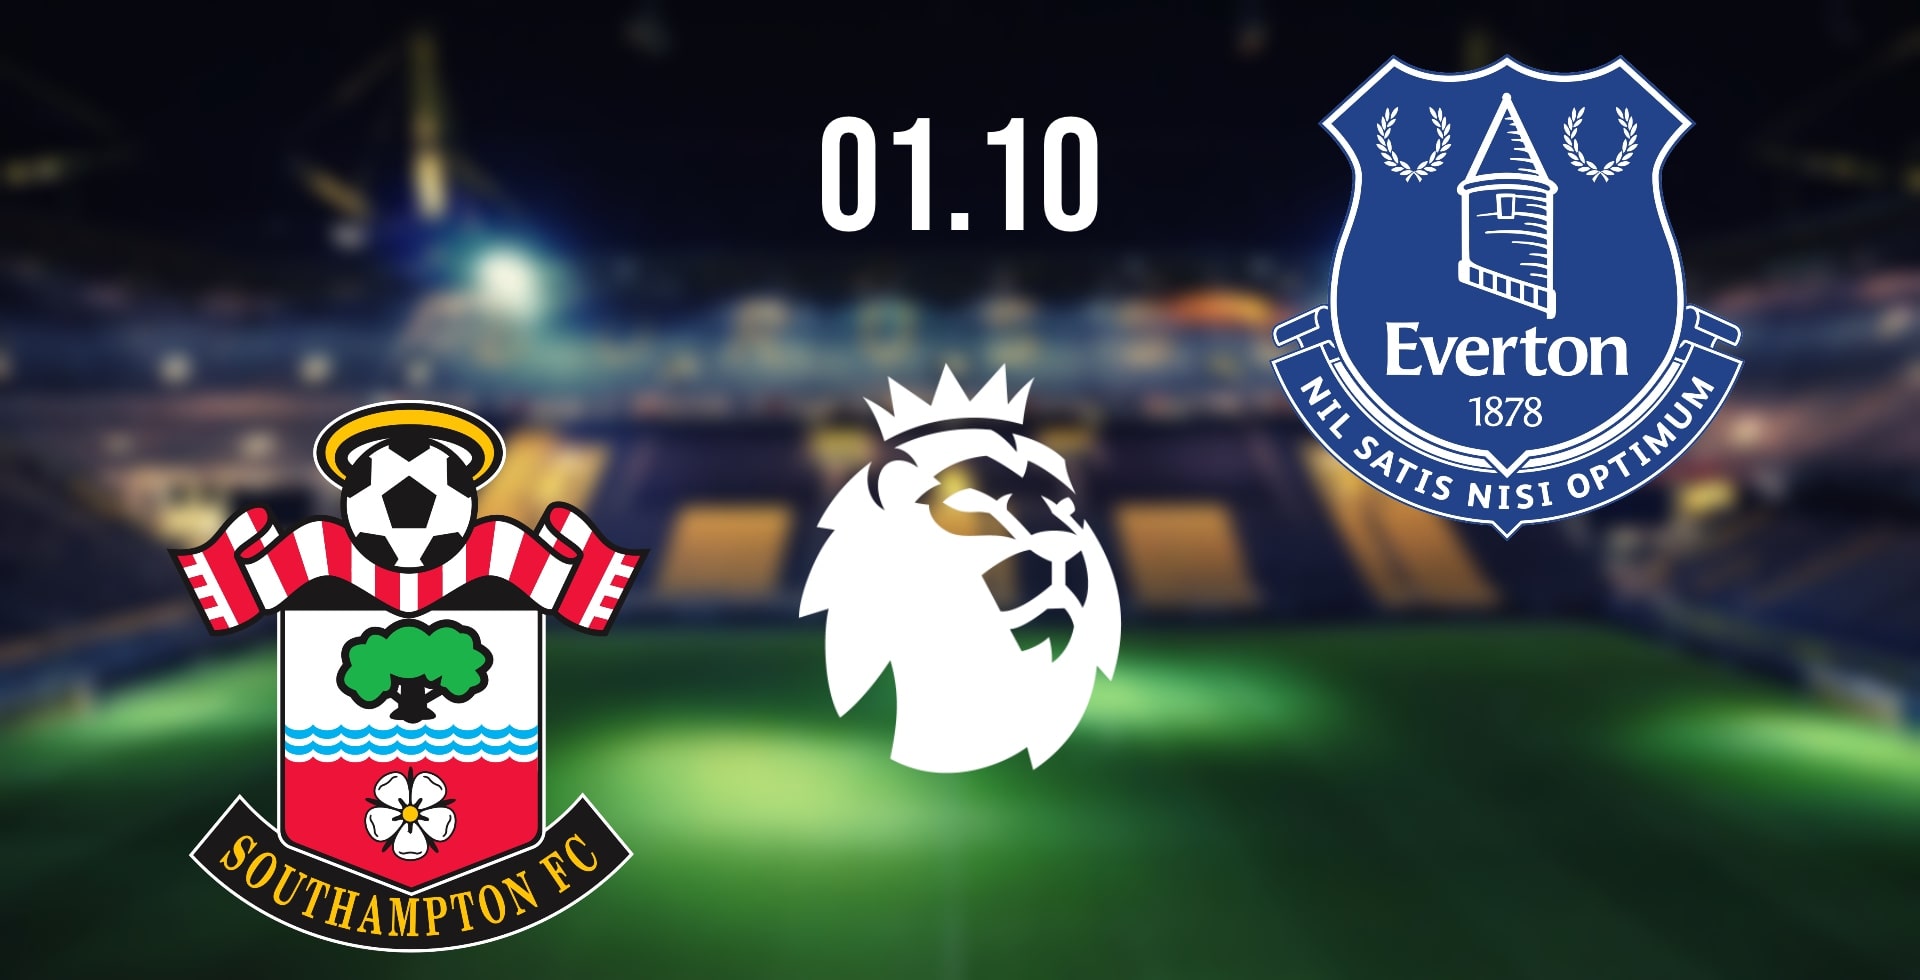 Southampton vs Everton Prediction: EPL Match on 01.10.2022